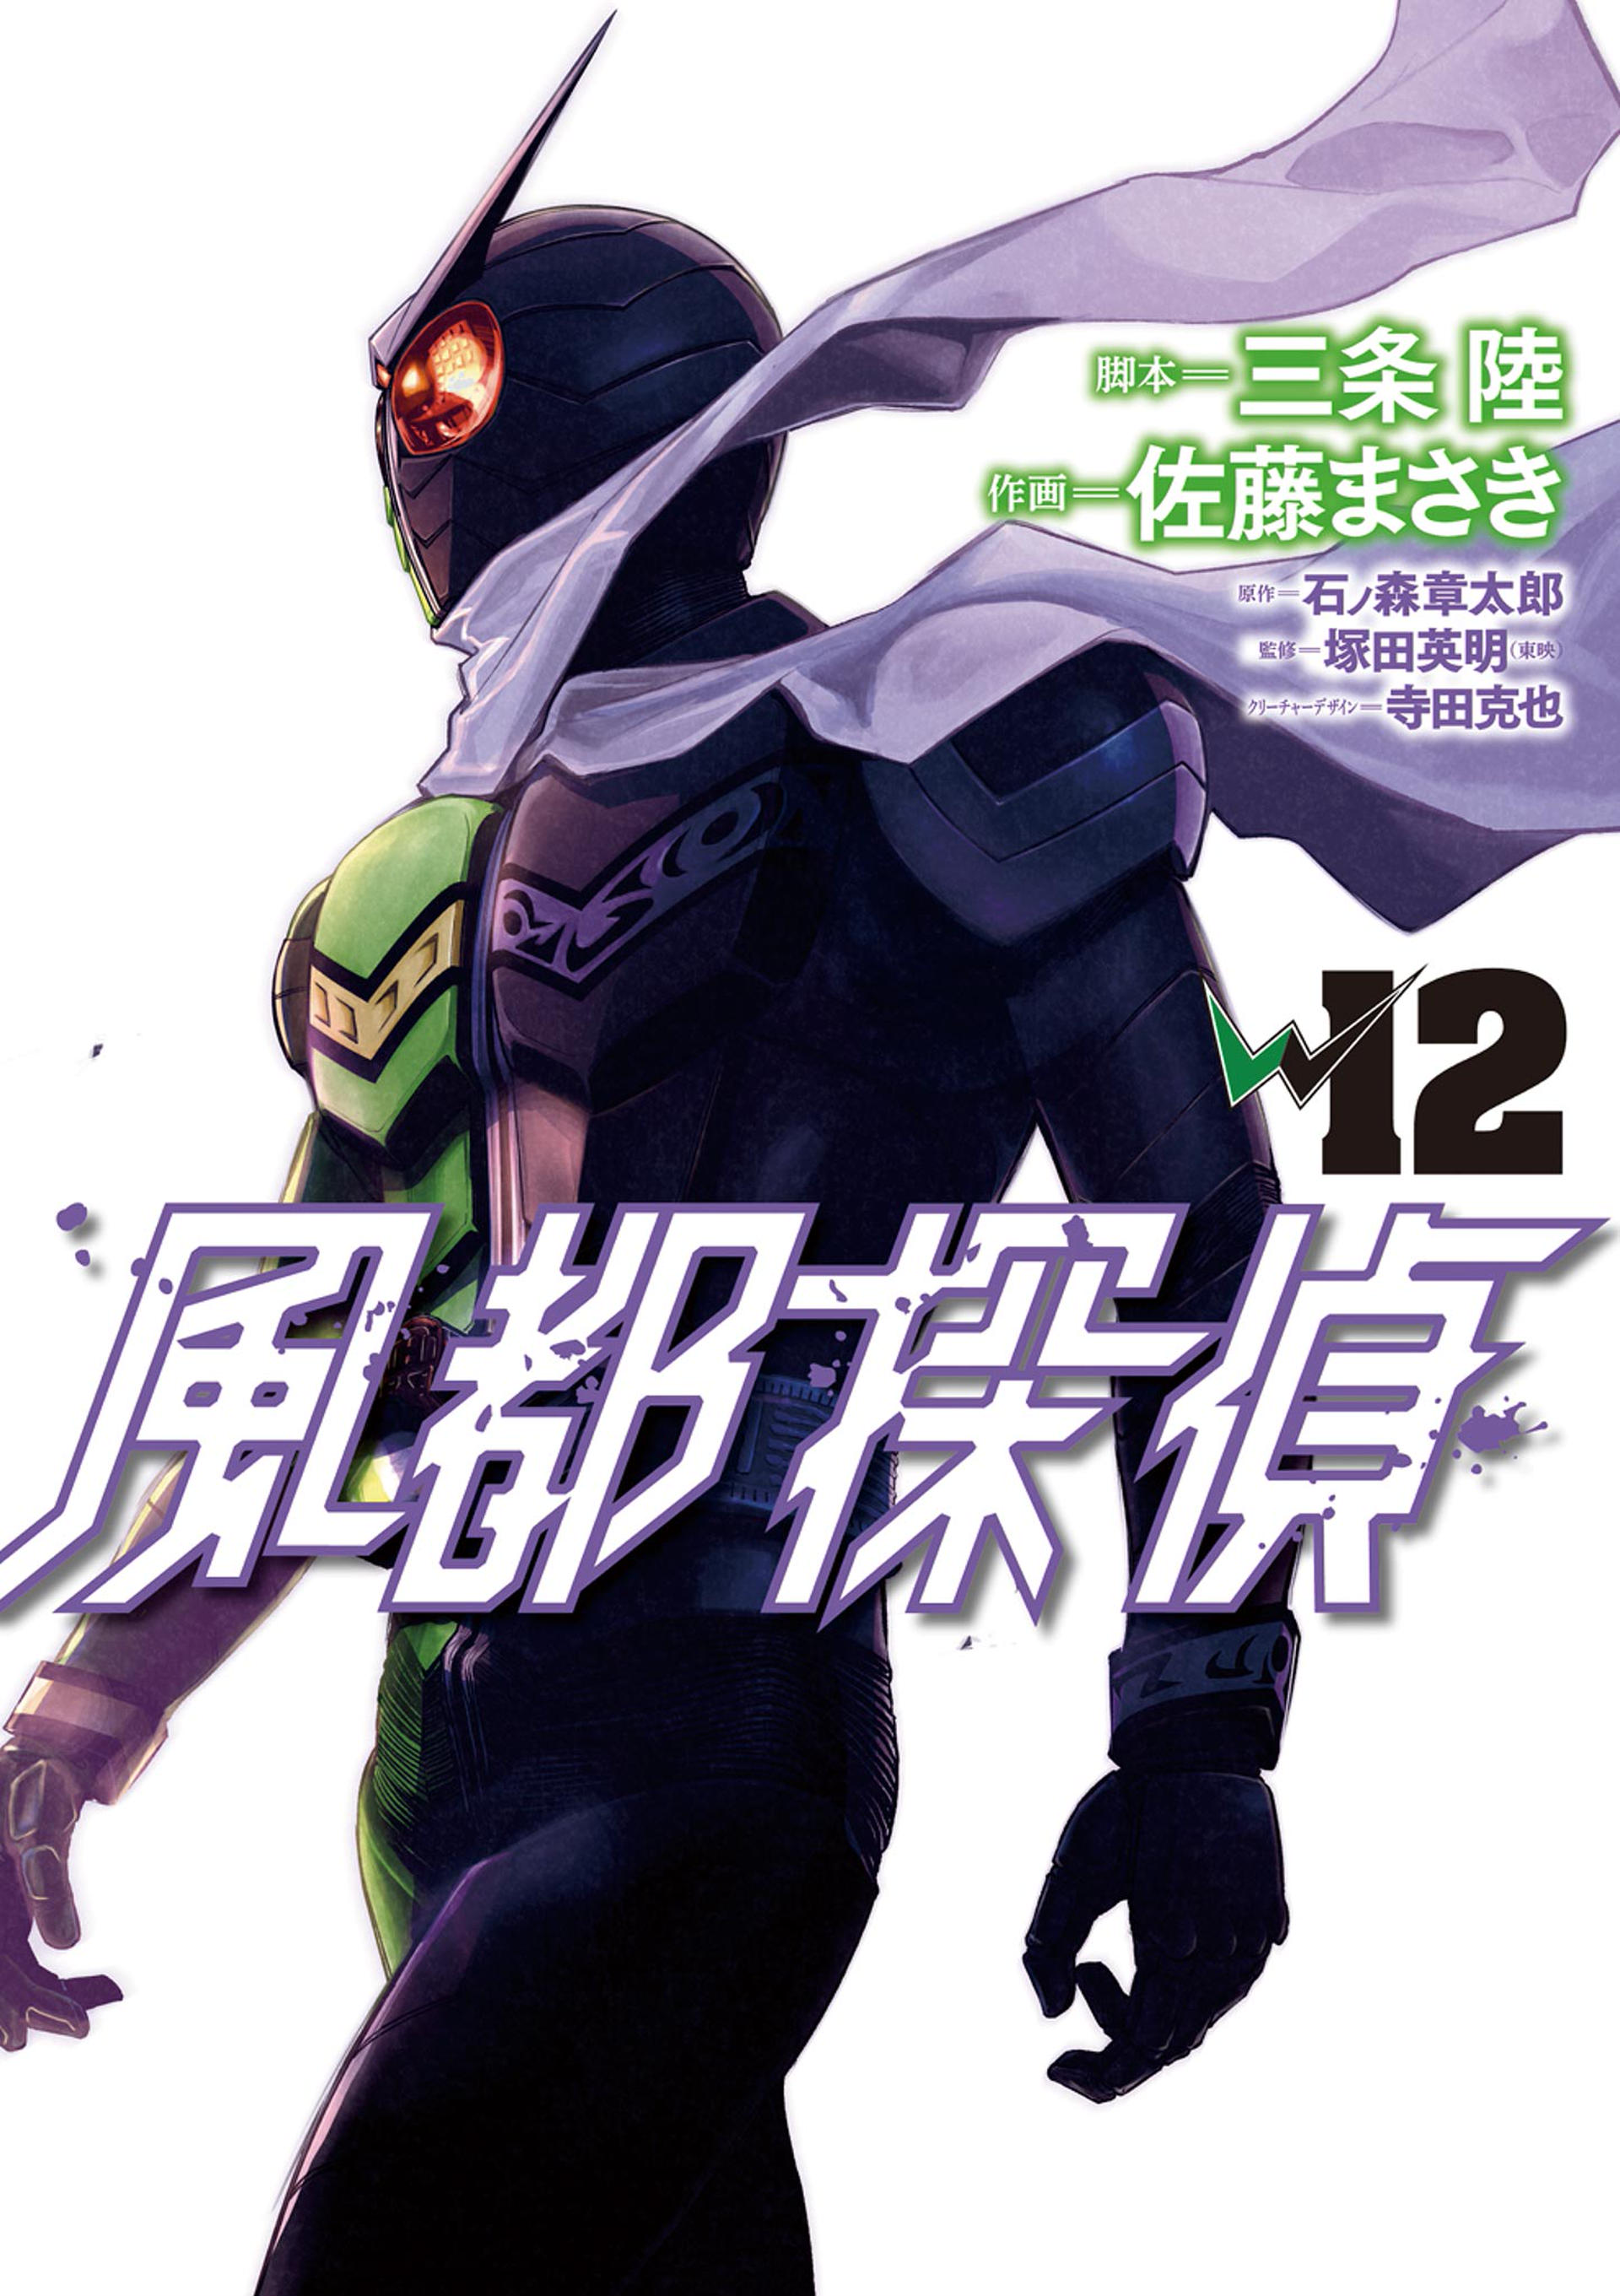 Kamen Rider W - Futo PI cover 4